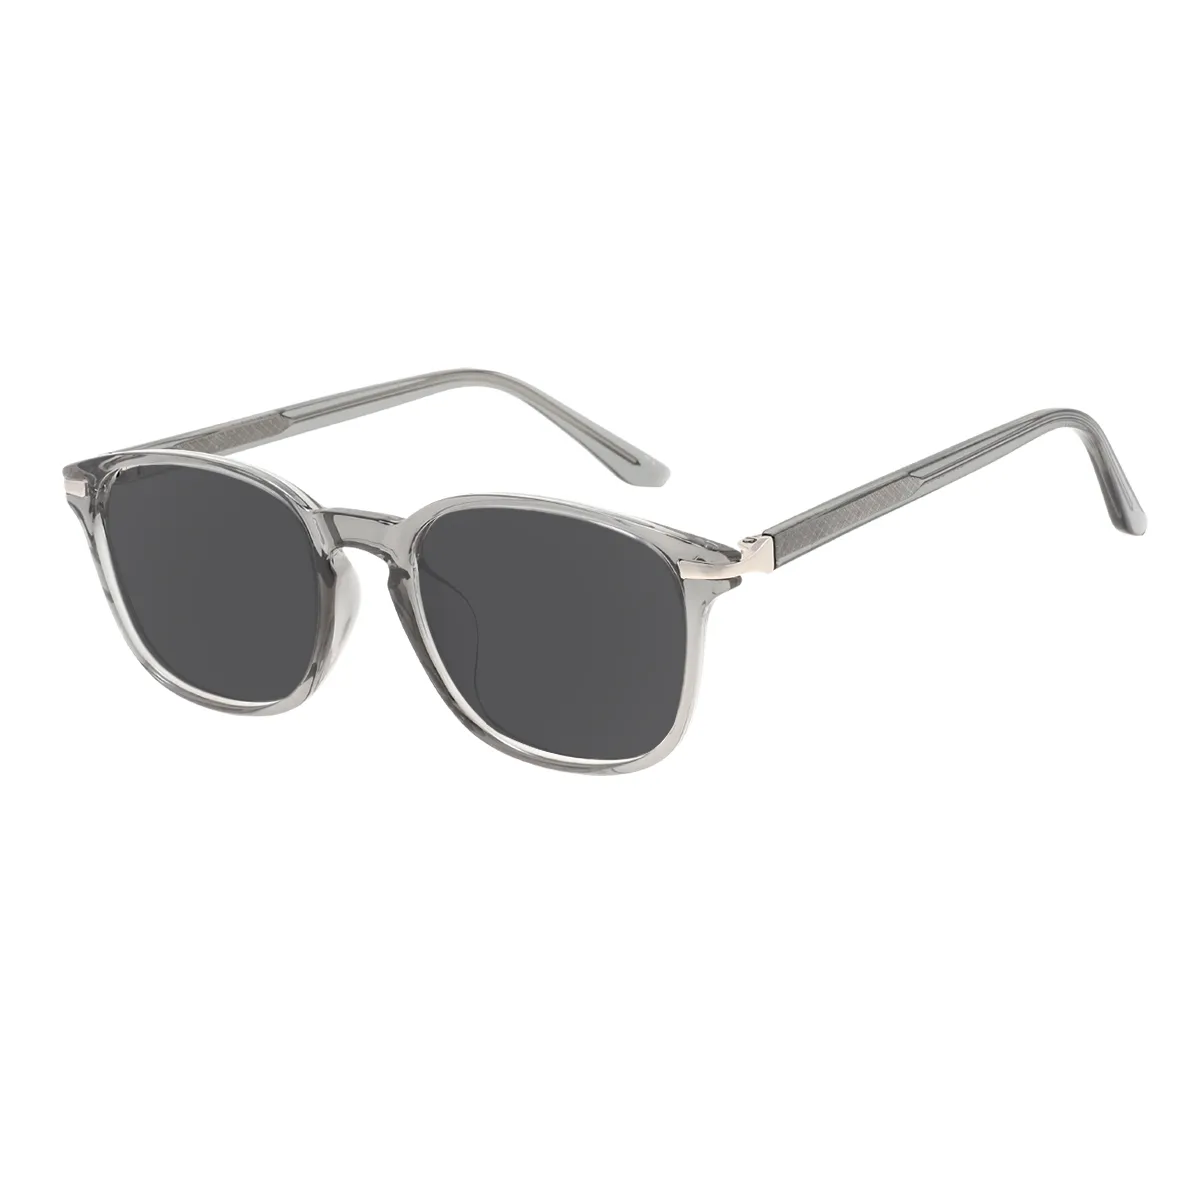 Emerson - Square Gray Sunglasses for Men & Women